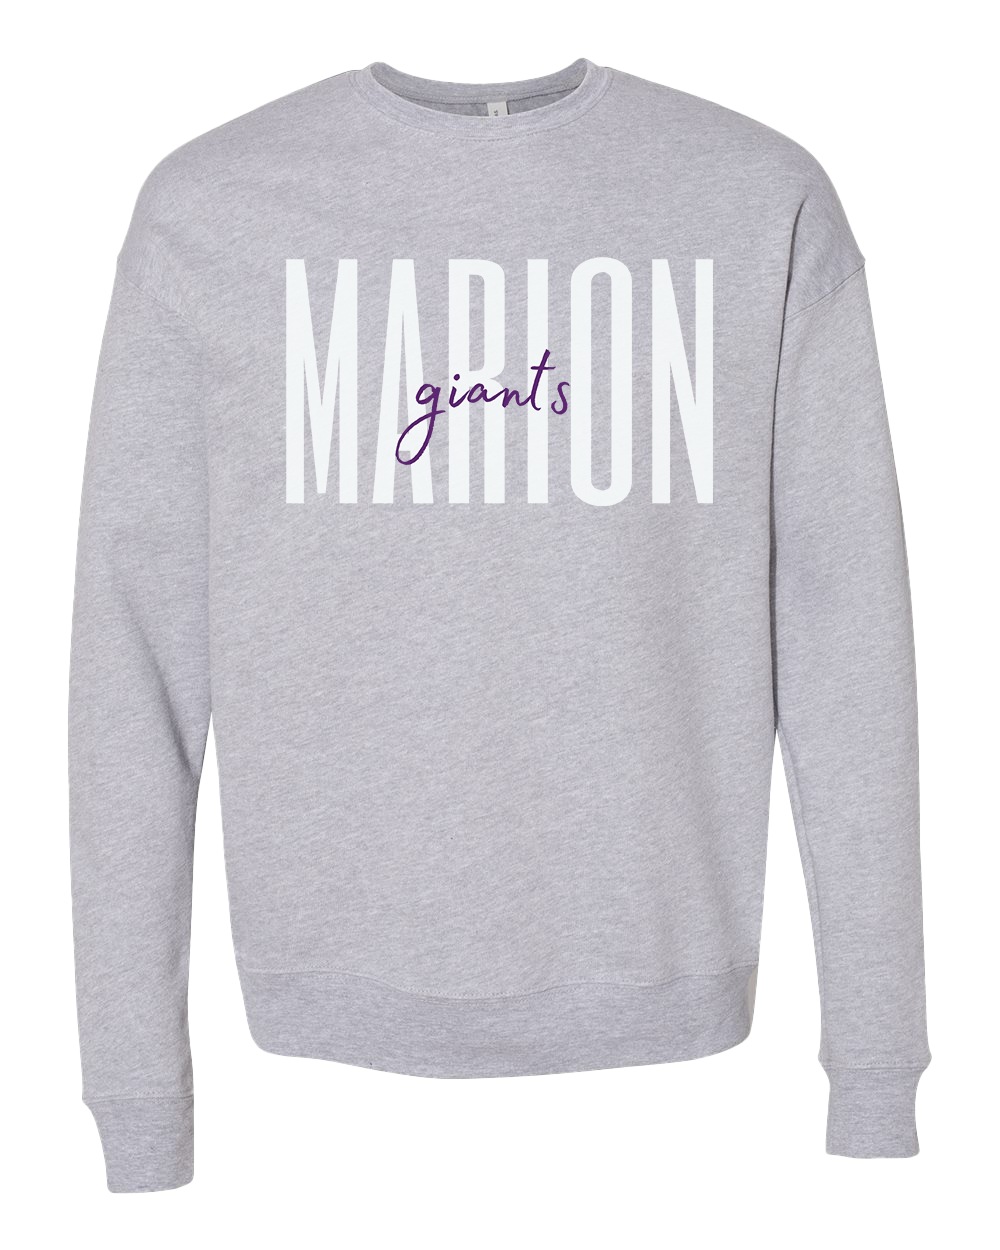 Marion Giants Script Crew Sweatshirt - Various Colors